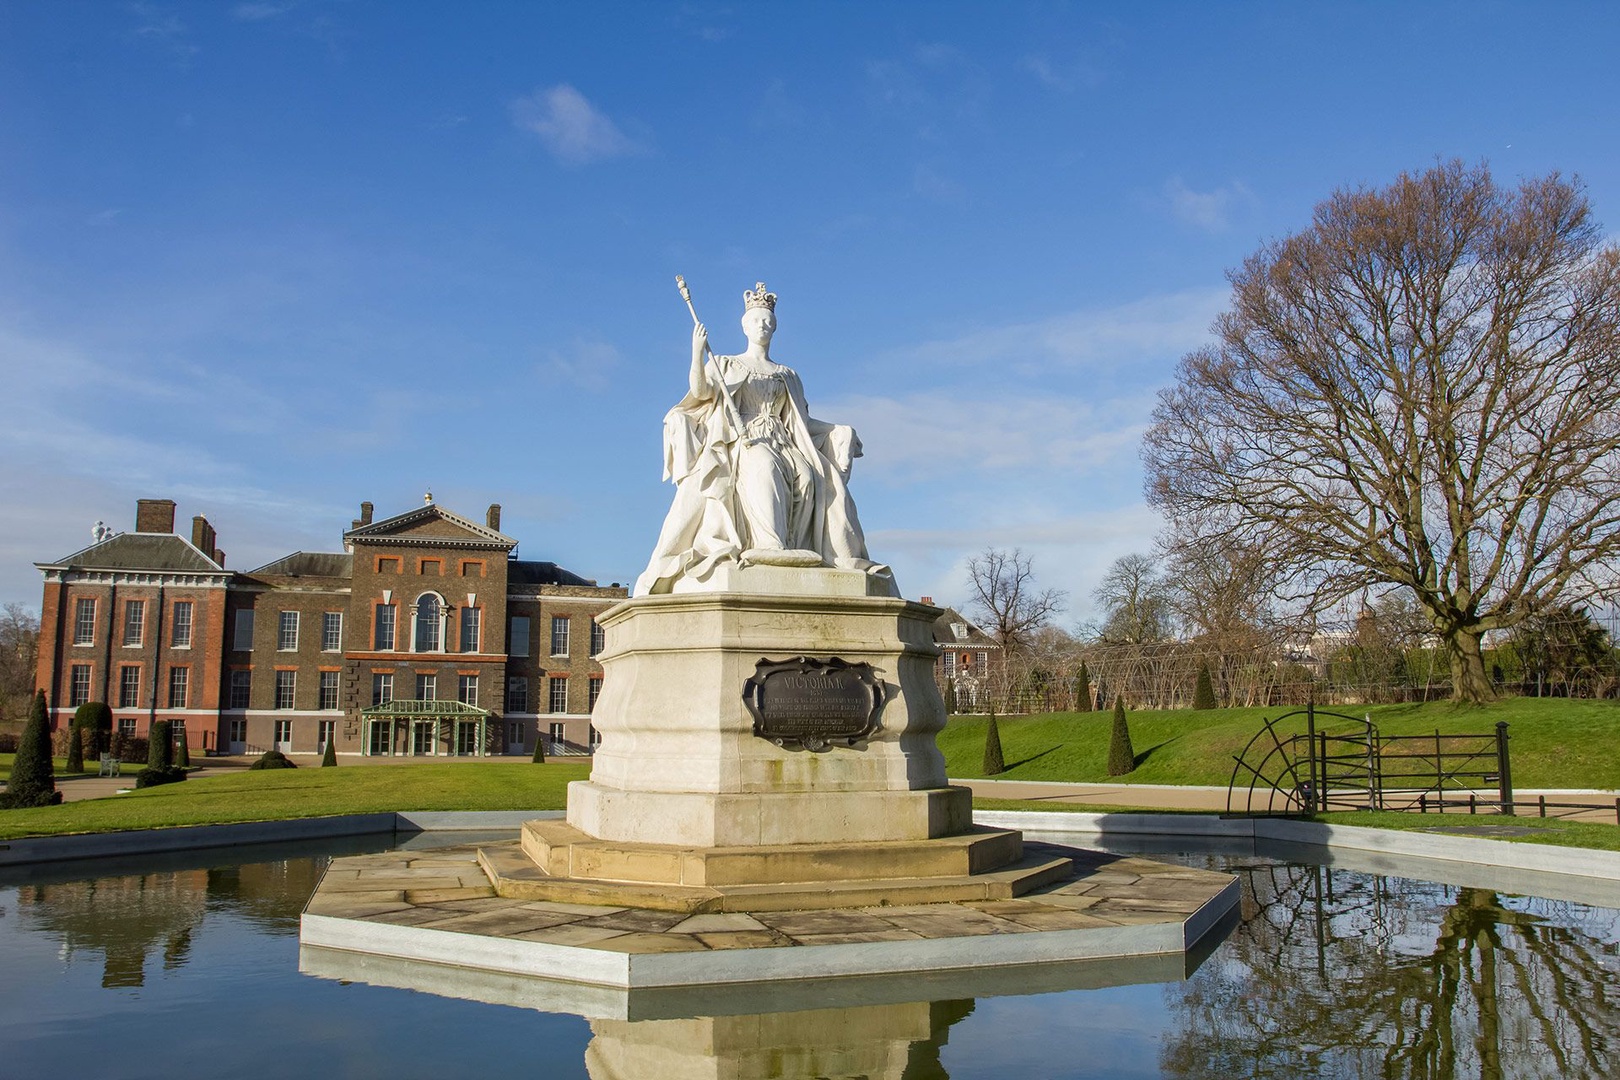 Kensington palace and gardens